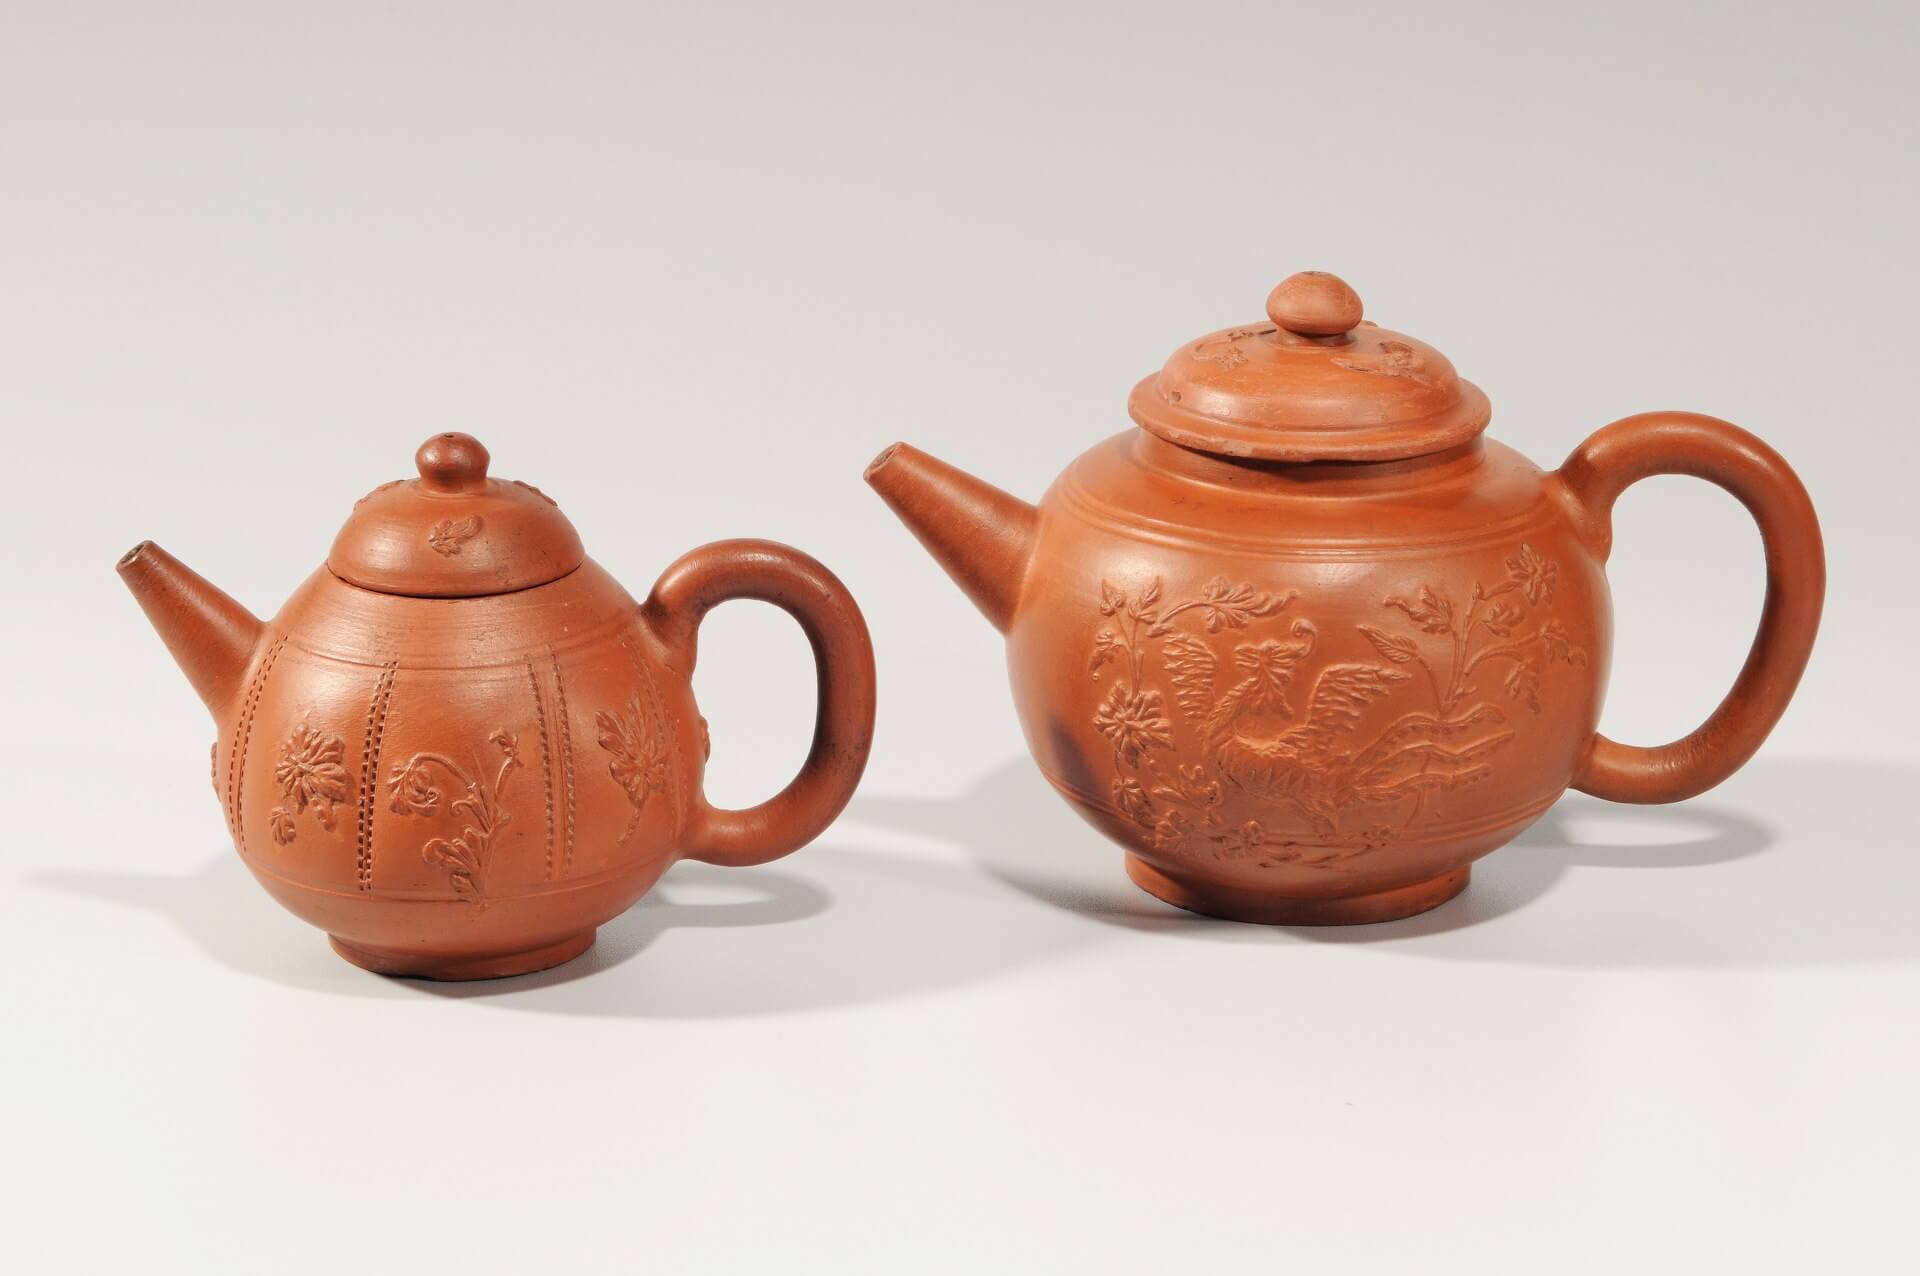 Antique ceramic red stoneware teapots